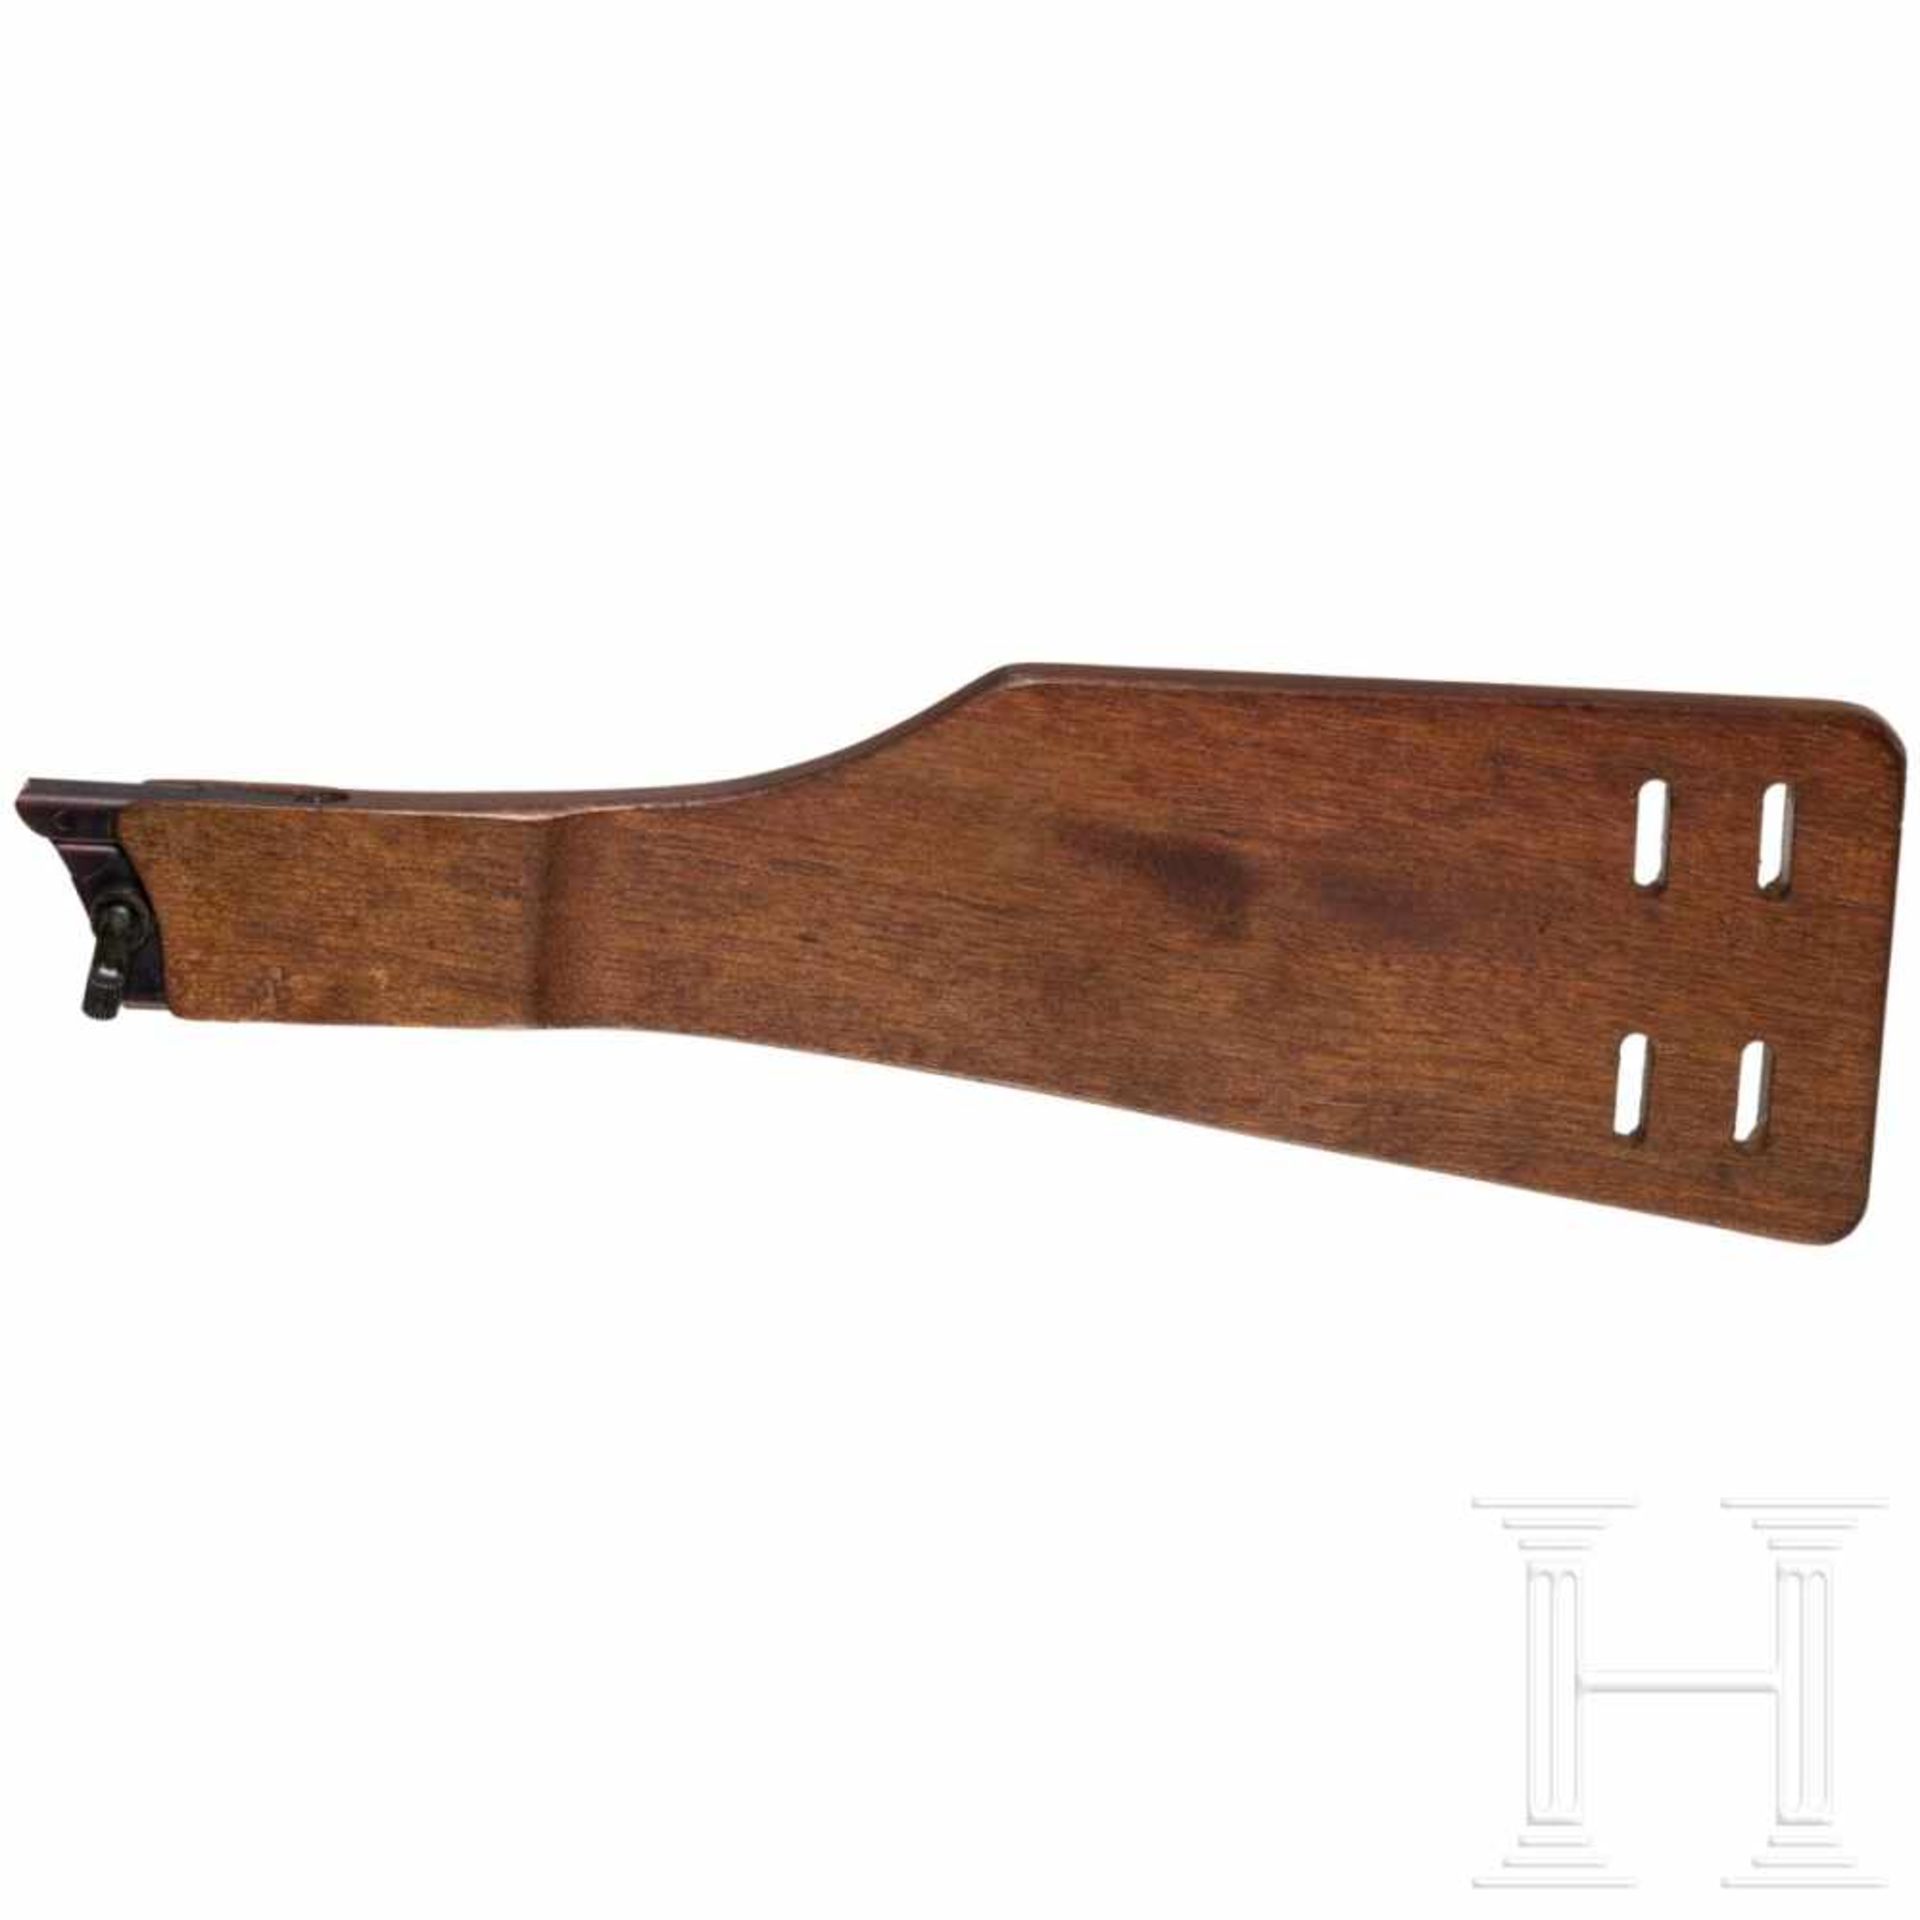 Anschlagbrett zur Pistole 08, DDRAus grobem, lackiertem Holz, Länge 36 cm. Brünierte Zwinge aus